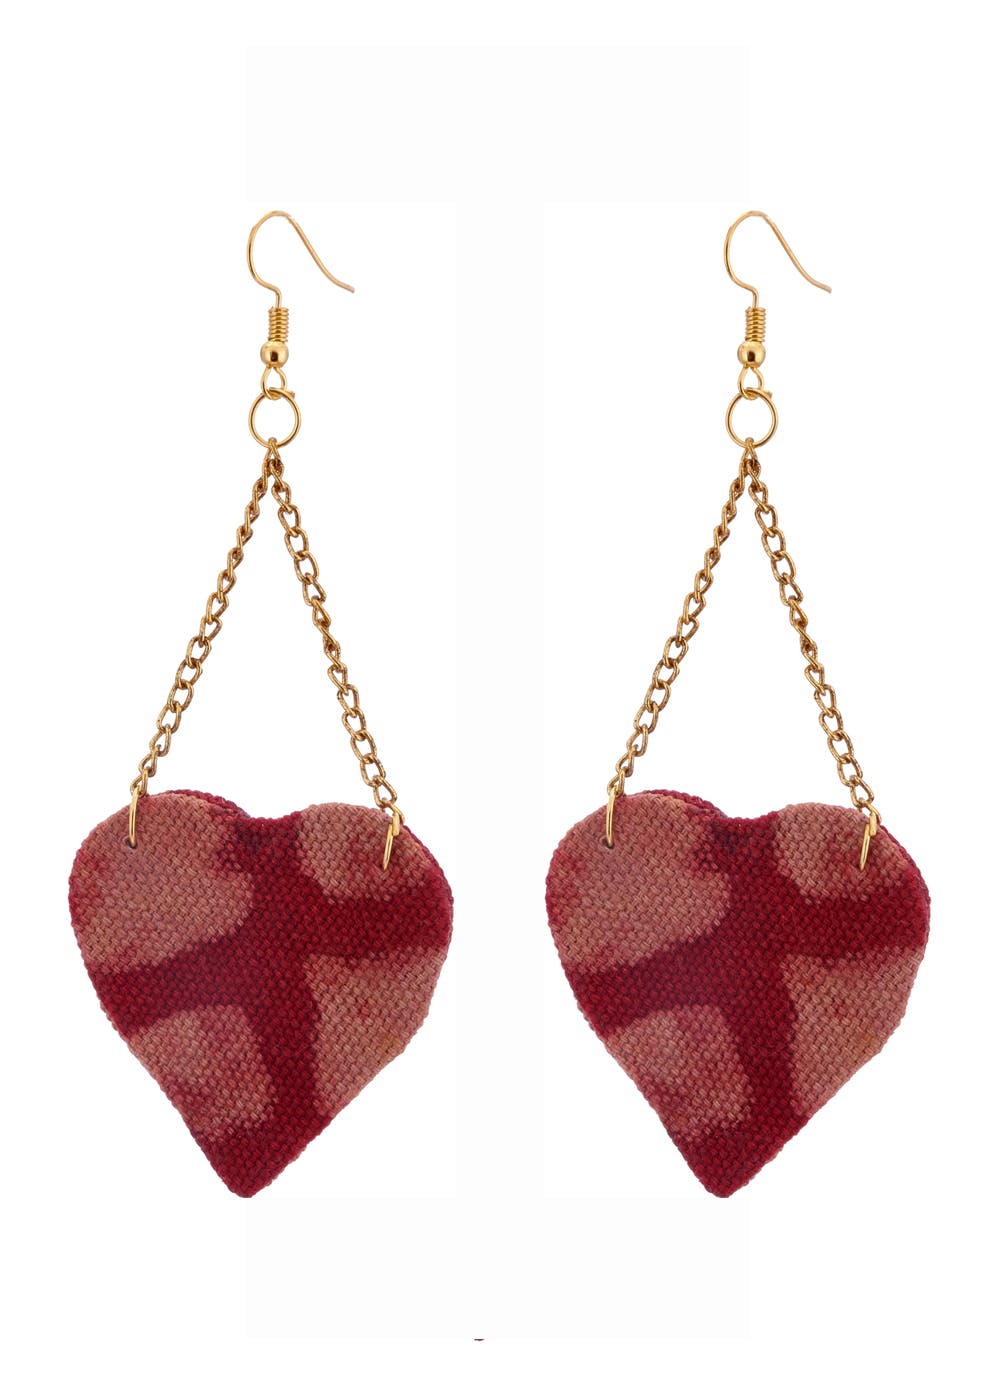 Red Heart Earrings For Women  Girl Enamel Fashion Big Alloy Heart Shape  Drop Dangle Earrings Wedding Artificial Jewelry Pack Of 1 Pair